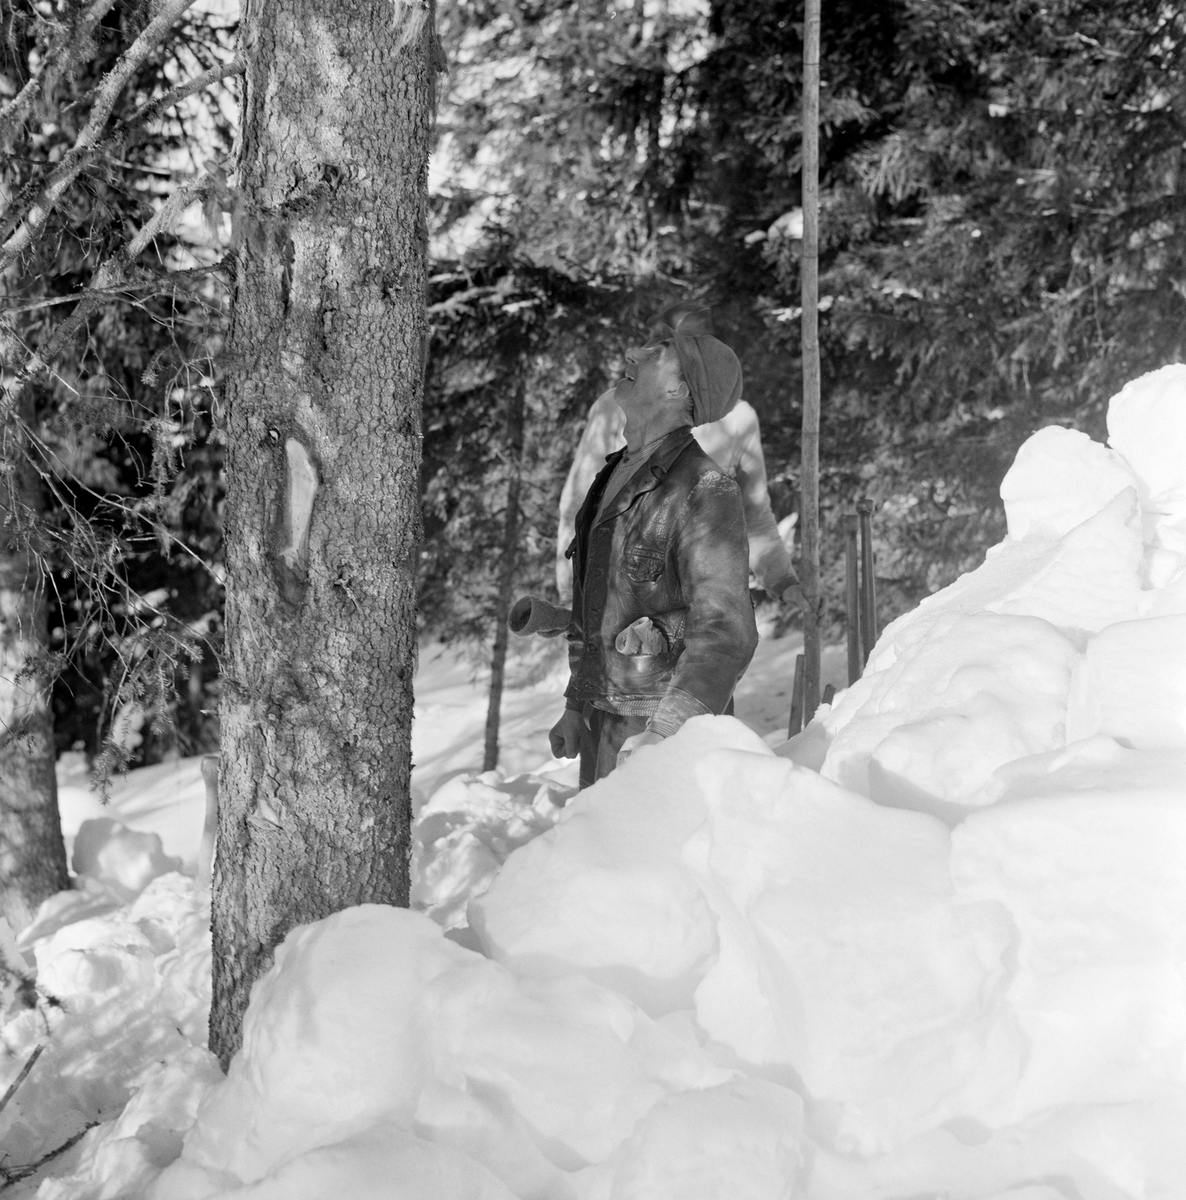 Skogsarbeider Kristoffer Kronberget fra Vestre Gausdal, fotografert under hogst i Bødalen i mars 1967.  Kronberget står ved en blinket granlegg og kikker oppover stammen.  Da fotografiet ble tatt var det djup snø i skogen.  Skogsarbeideren har snø opp til hoftene, men har trolig spadd bort noe av snøen rundt treet for å kunne stubbe lavt.  Med blikket opp mot trekrona vurderte han antakelig hvordan han antakelig fellingsretningen.  Kristoffer Kronberget var kledd i ei mørk skinnjakke med votter i lommene, og han hadde tekstilhatt med brem som skygget for øynene på hodet.  Bak ham skimtes nok en mannsskikkelse, antakelig arbeidskameraten Ottar Gudbjørsrud.  Begge karene var aktører i en film Norsk Skogbruksmuseum produserte om hankekjøring, og stammen fra dette treet var antakelig blant dem som ble kjørt ned den bratte lia under filmopptakene.